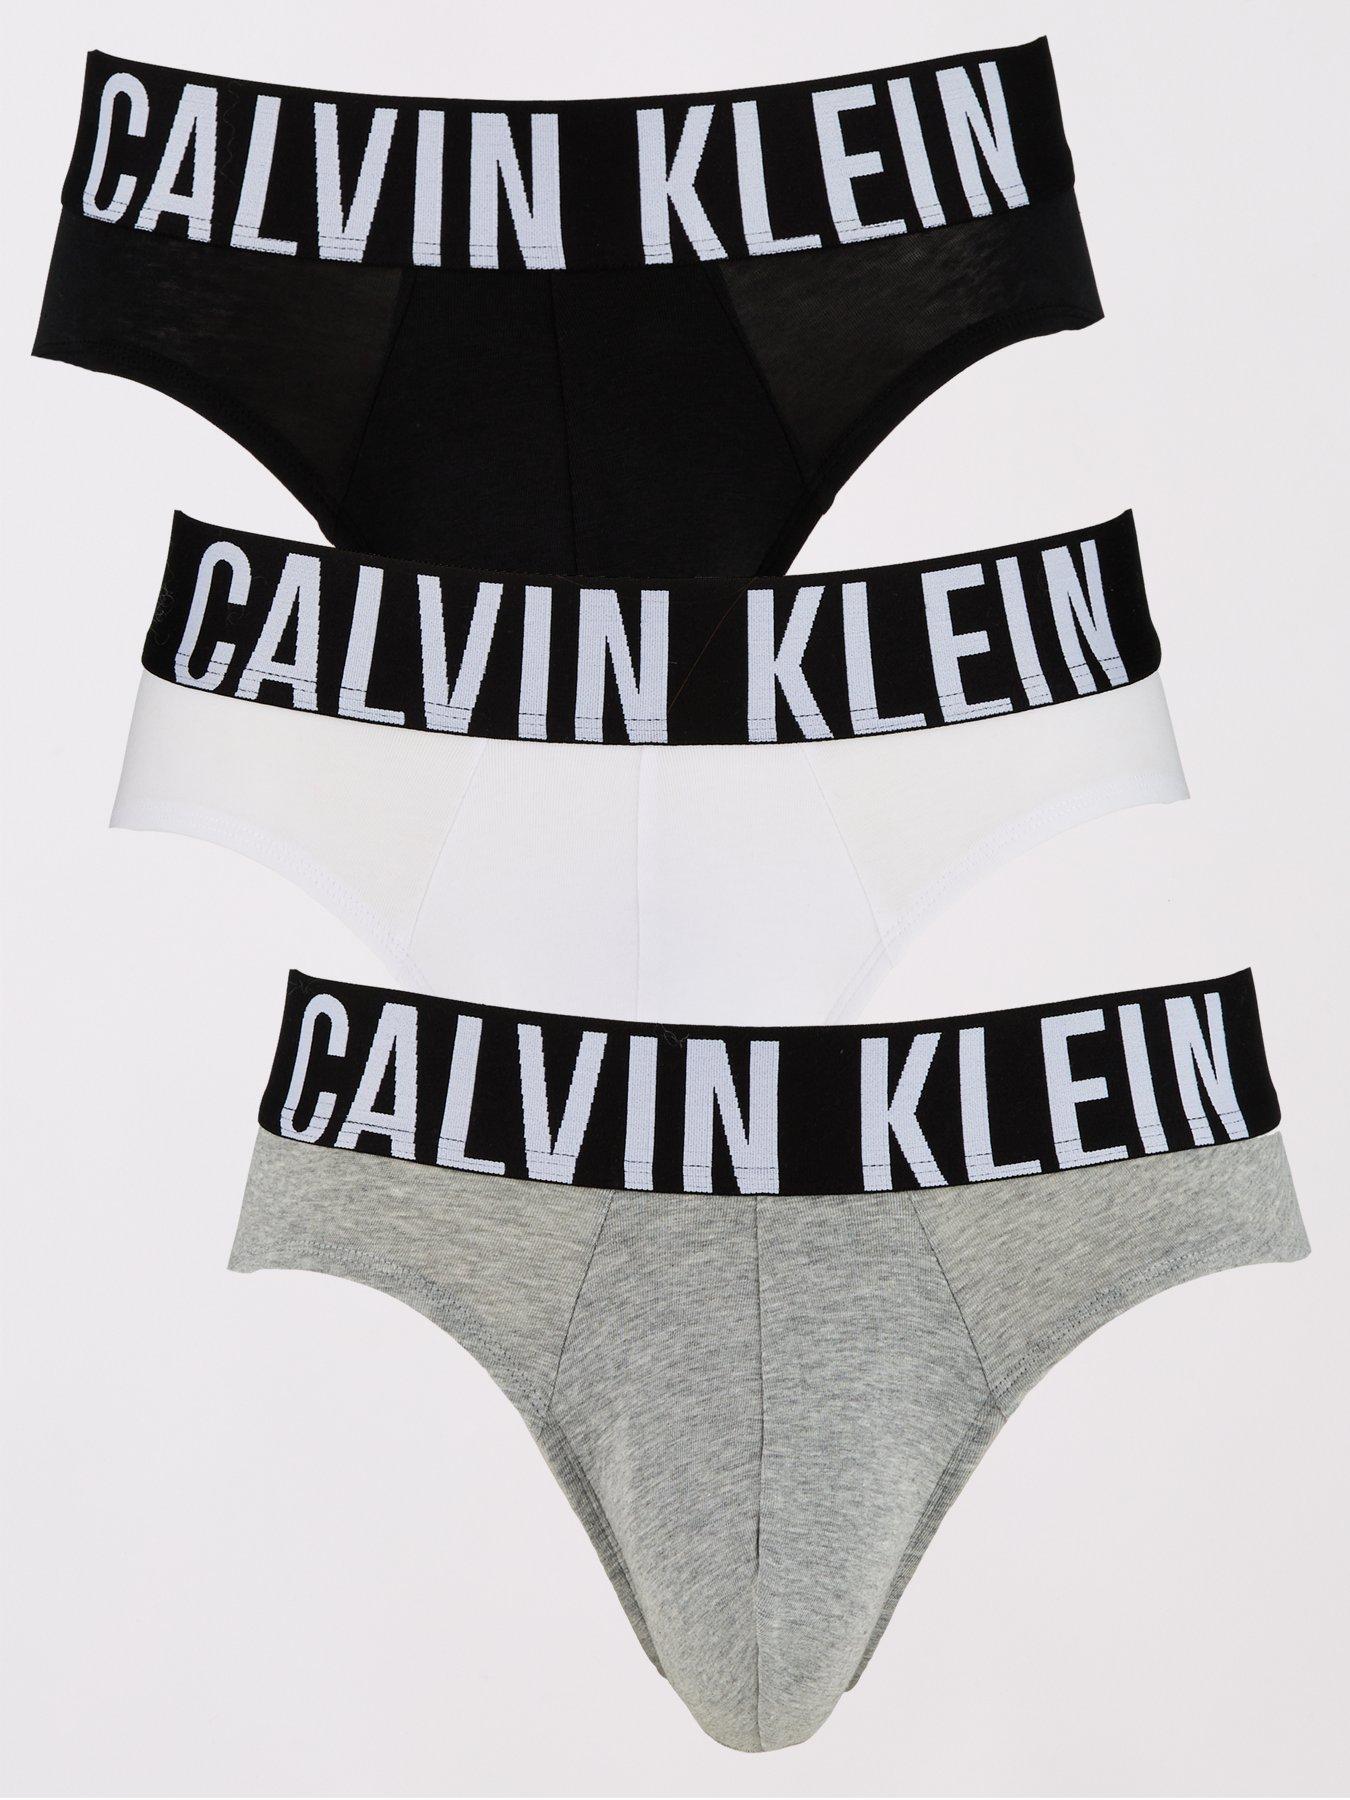 XXL, Calvin klein, Underwear & socks, Men